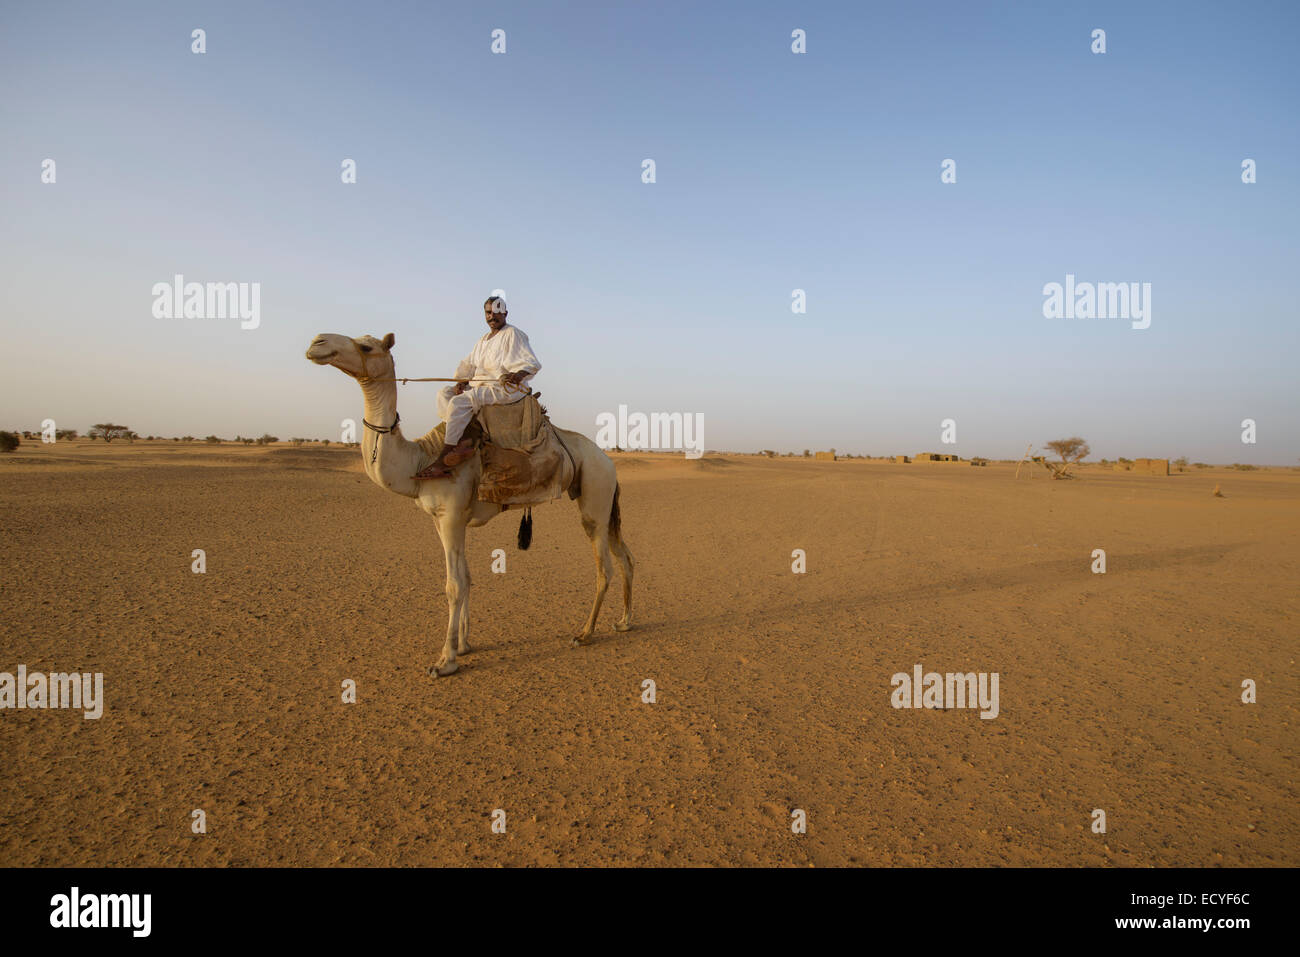 Camel herders of the Sahara desert, Sudan Stock Photo